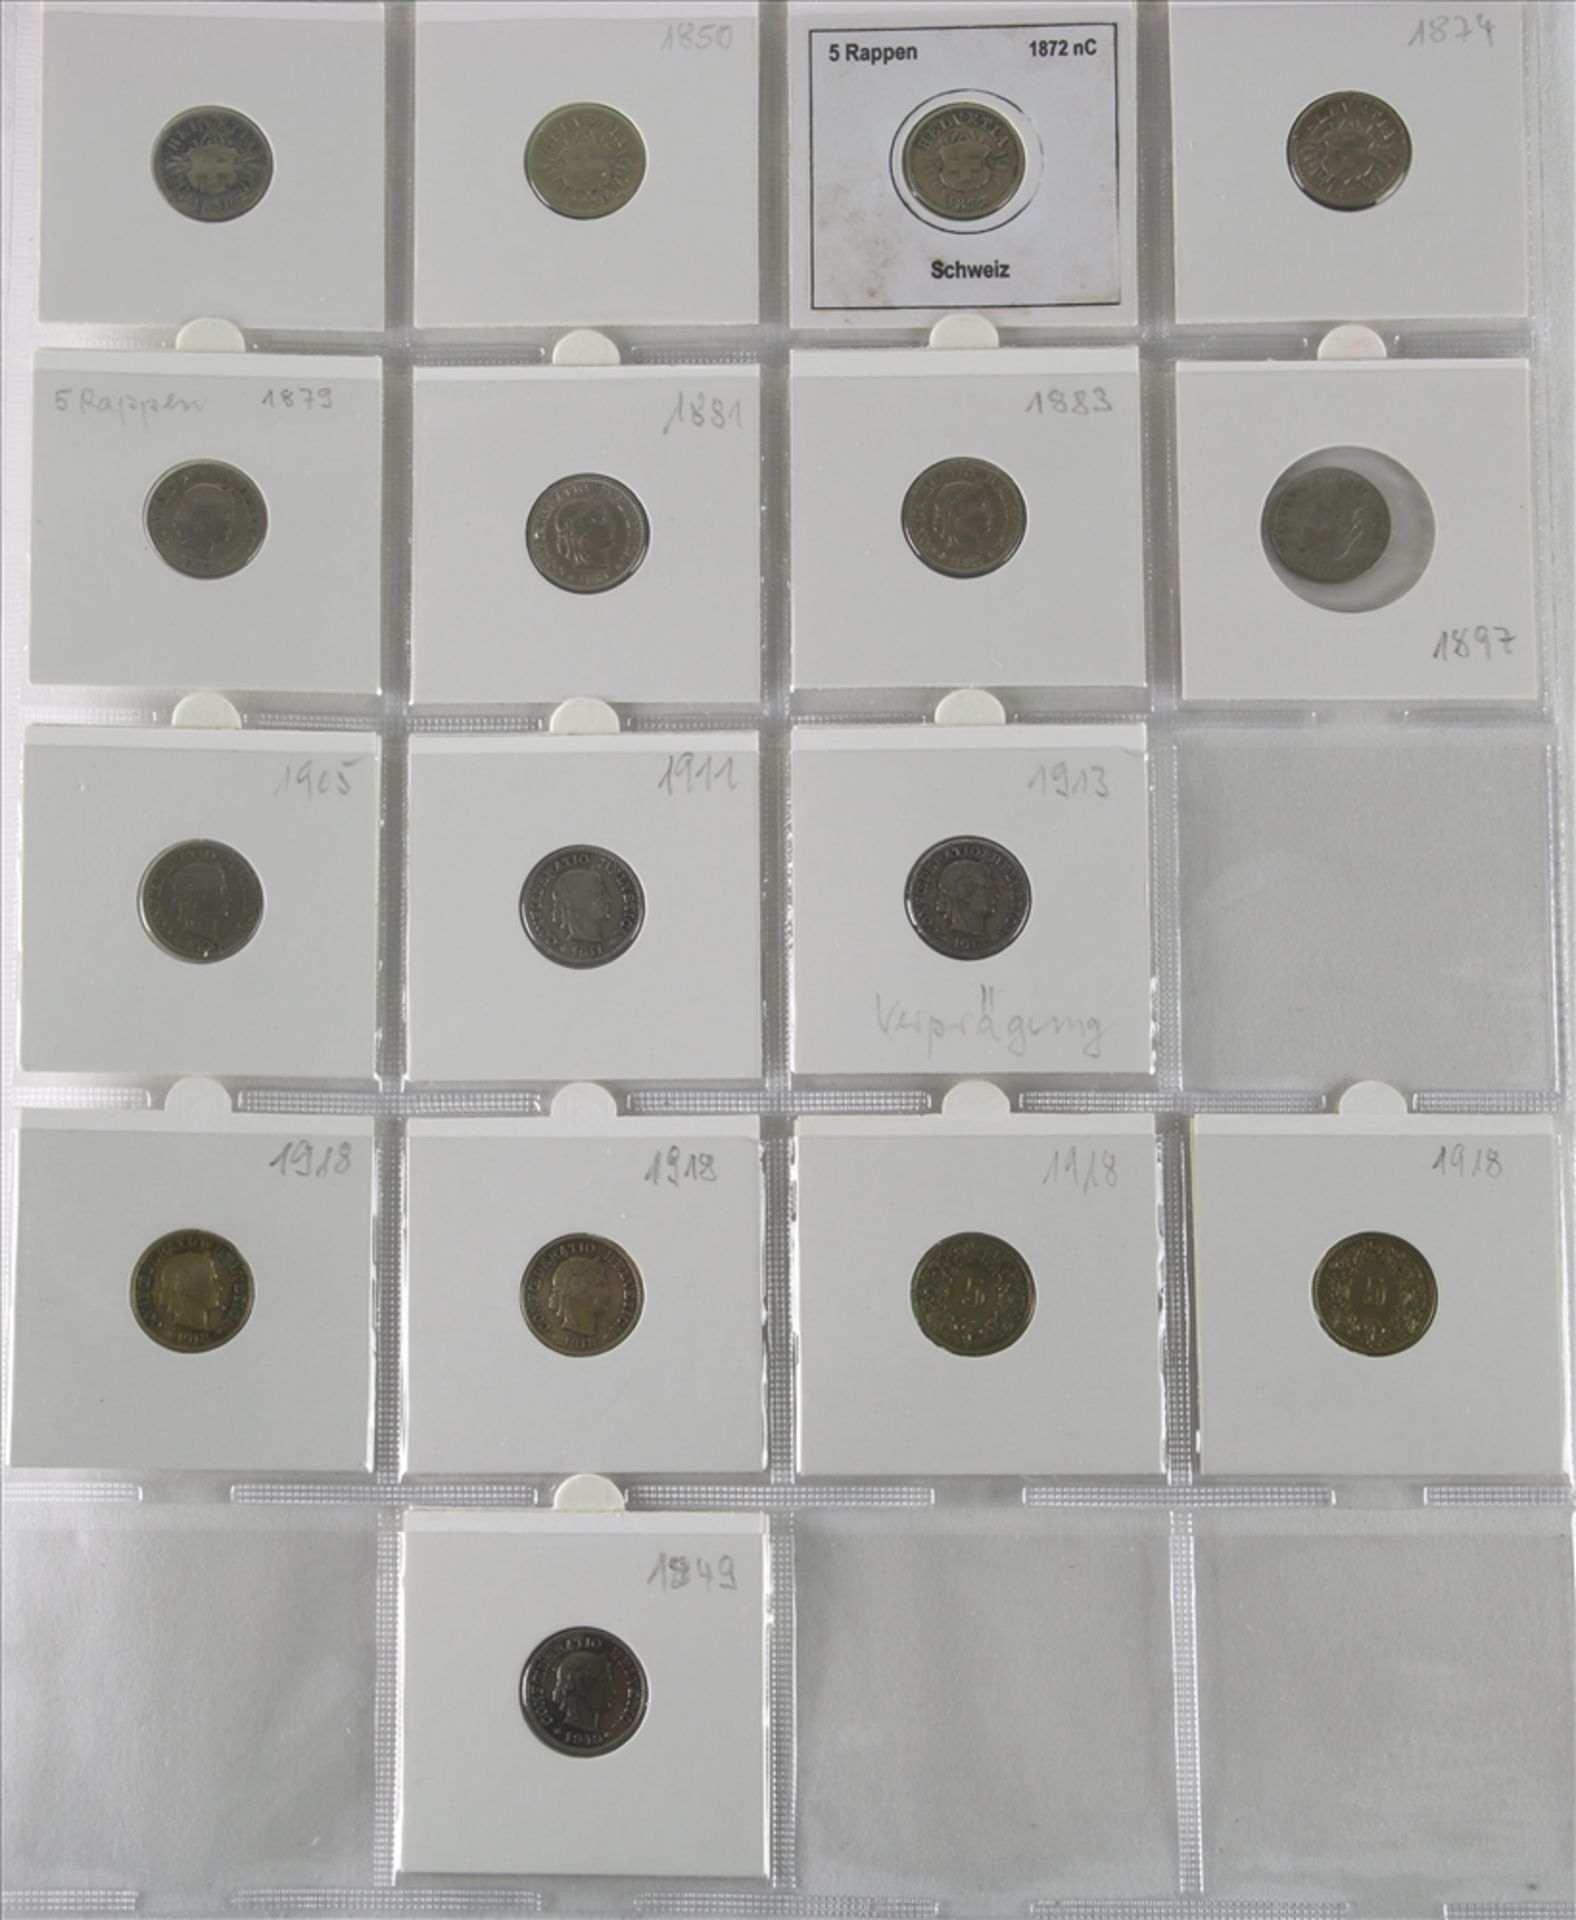 Konvolut Münzen 1-5-Rappen Stücke, Schweiz ab 1850. Unterschiedliche Jahrgänge und Zustände. U.a. - Bild 2 aus 5